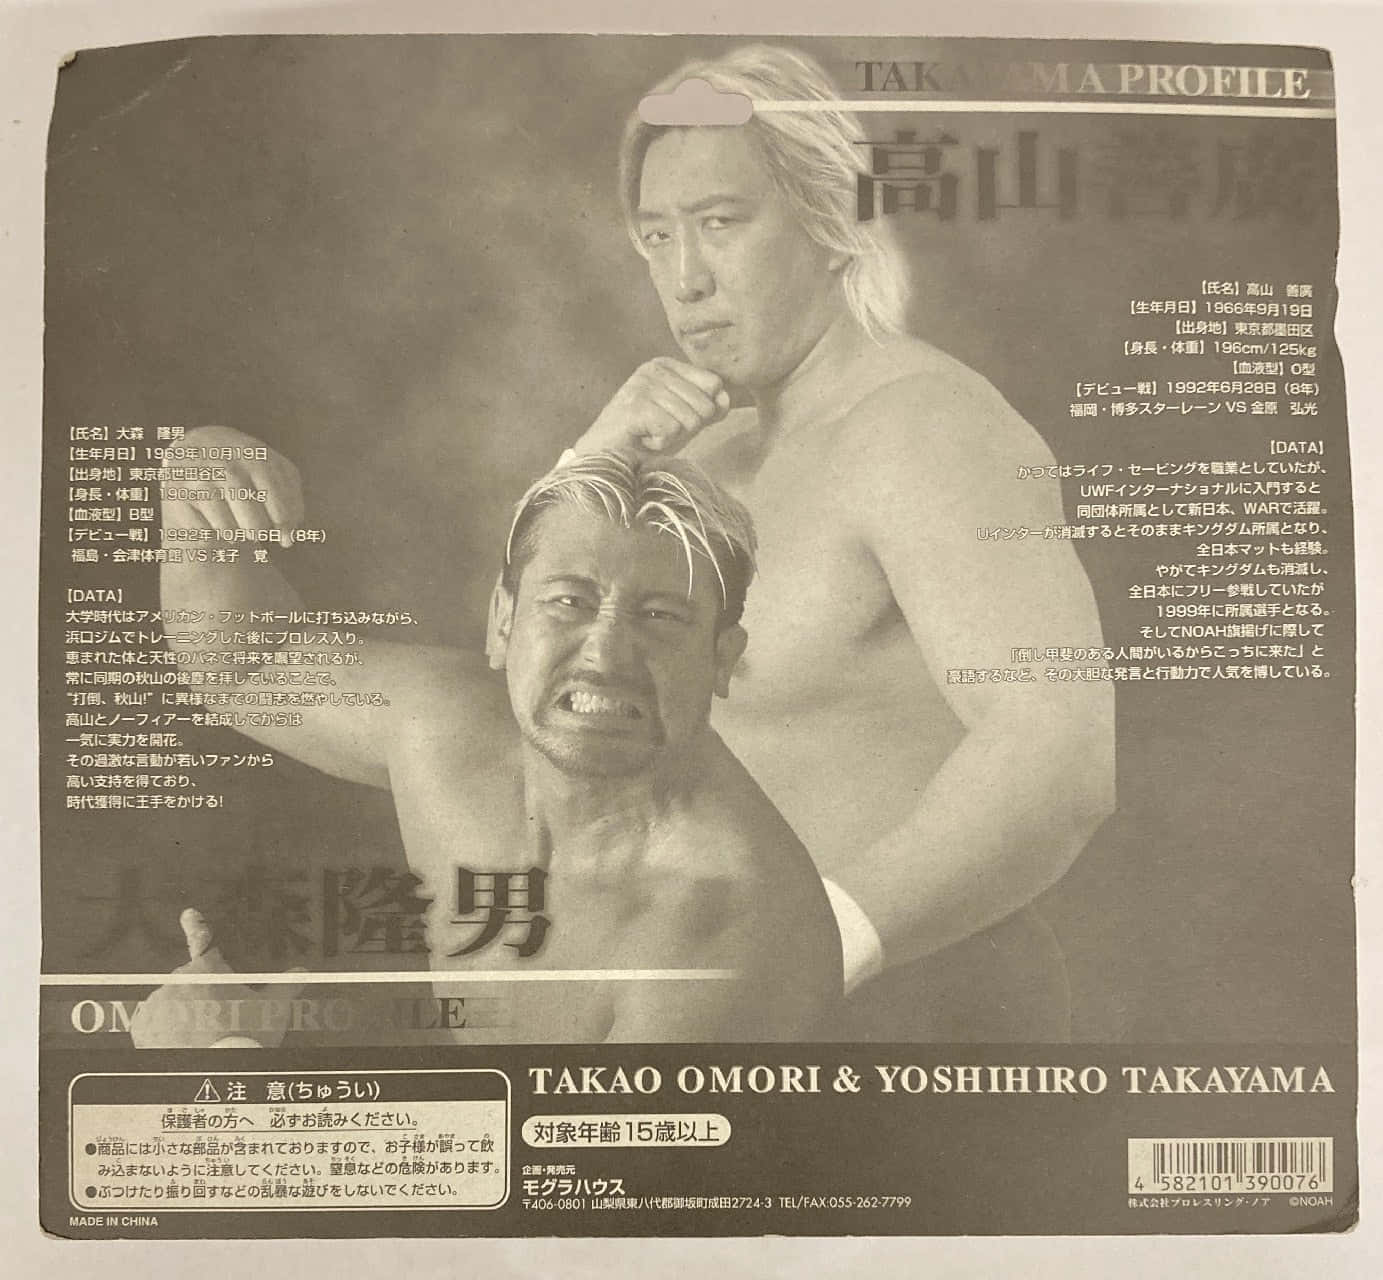 Yoshihiro 1383 X 1280 Wallpaper